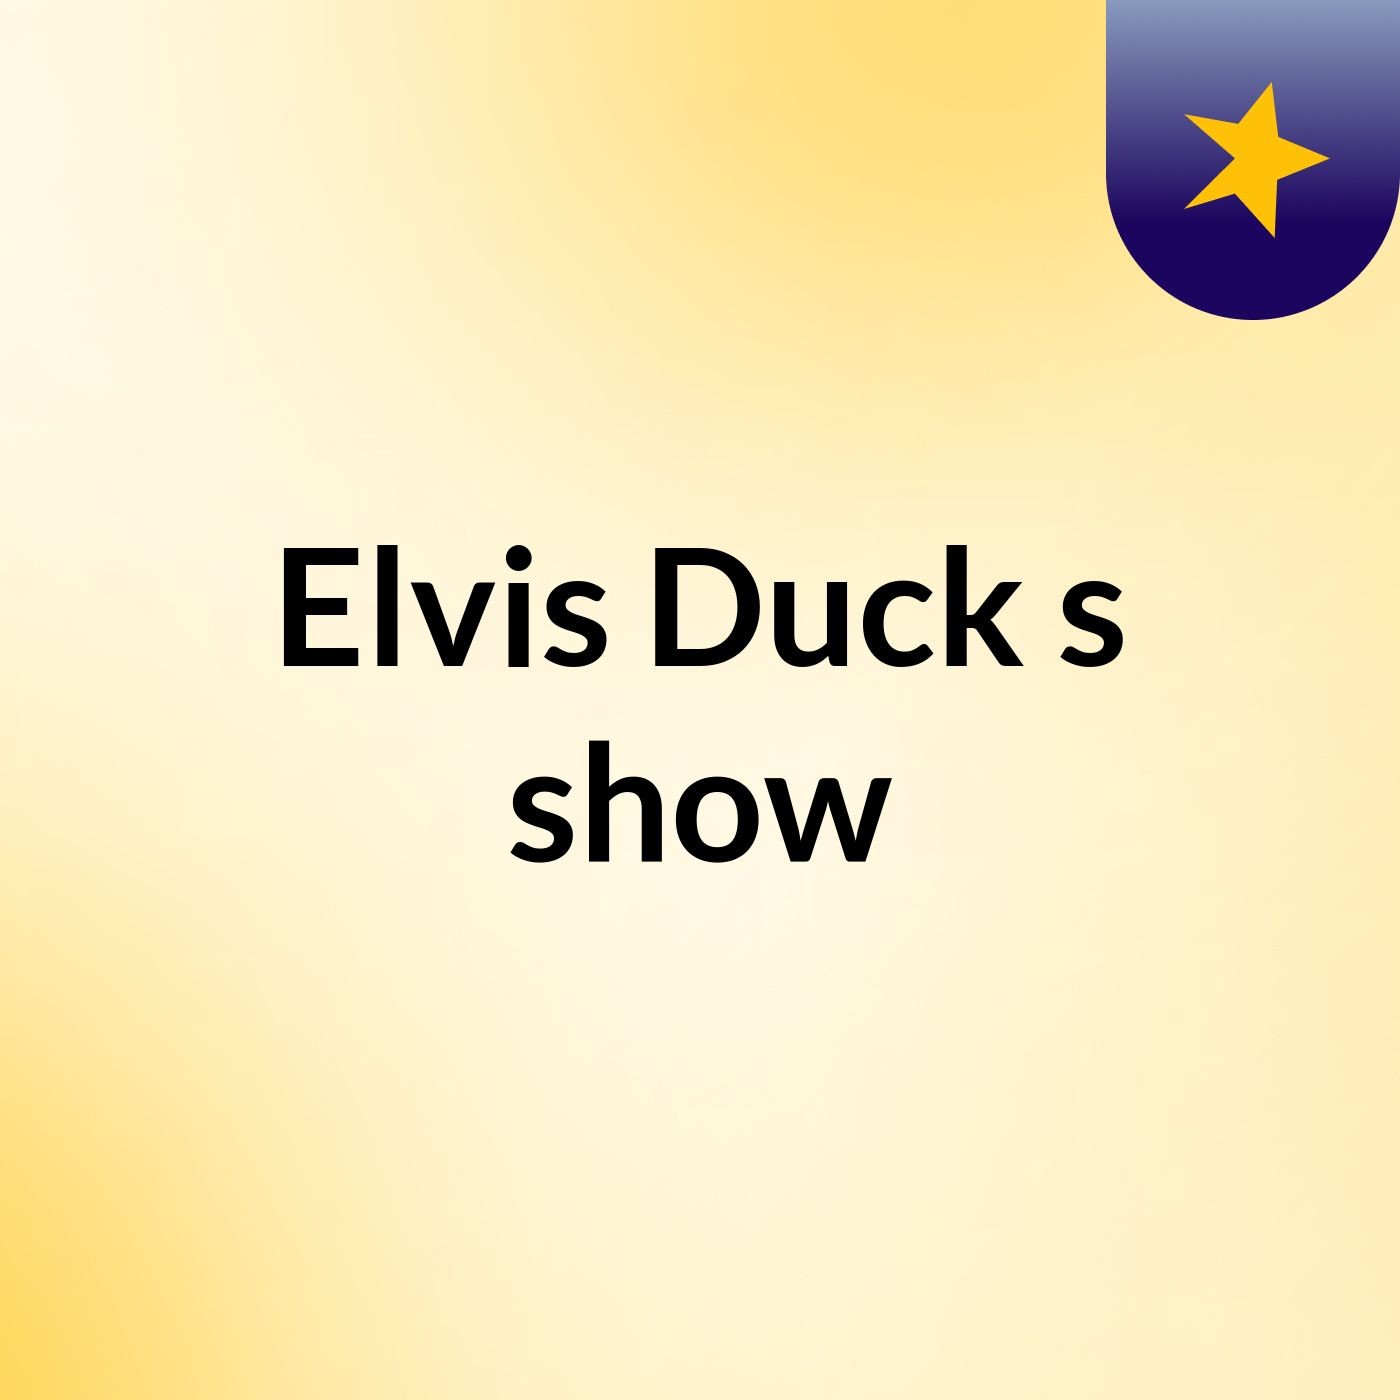 Elvis Duck's show